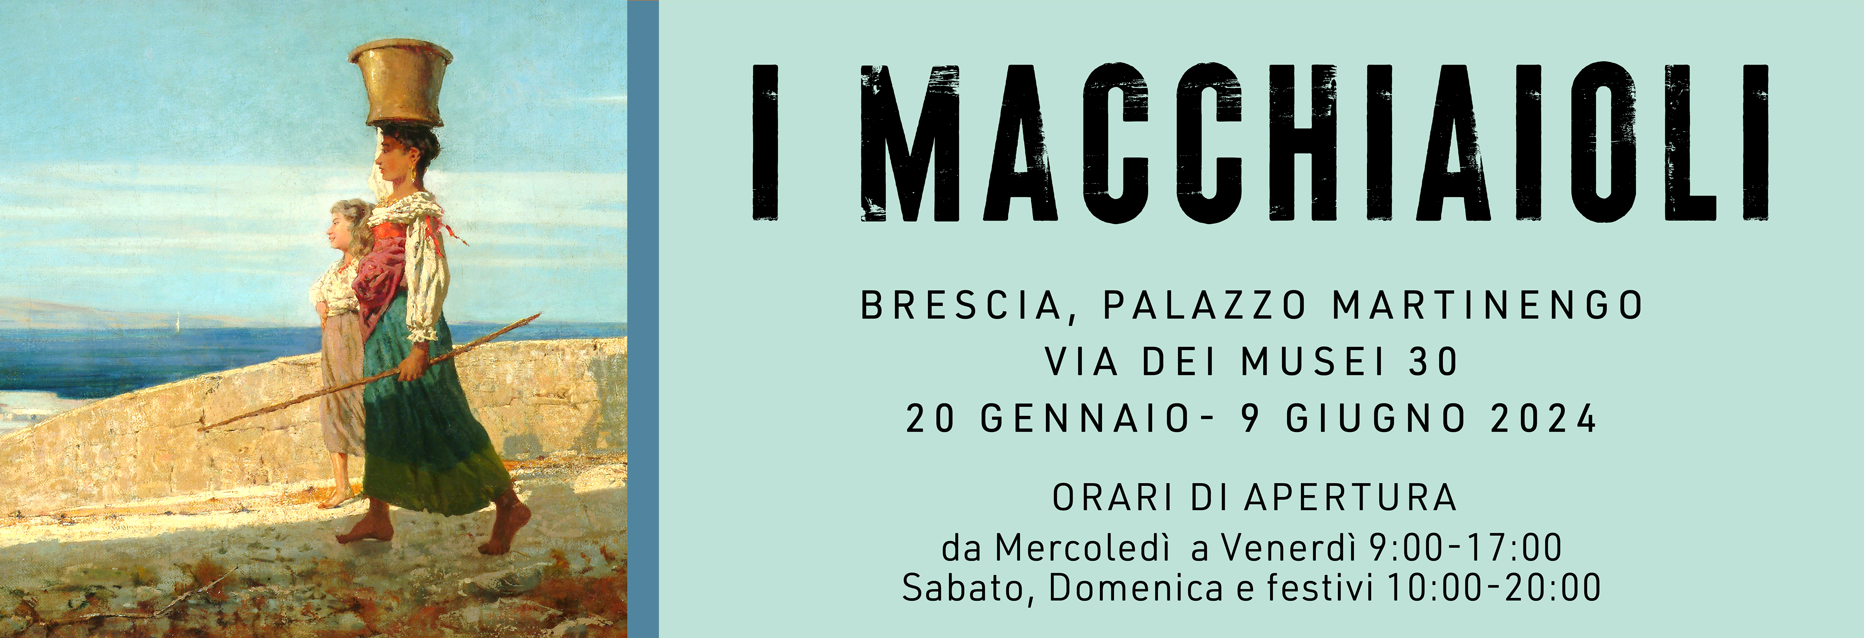 I Macchiaioli_3